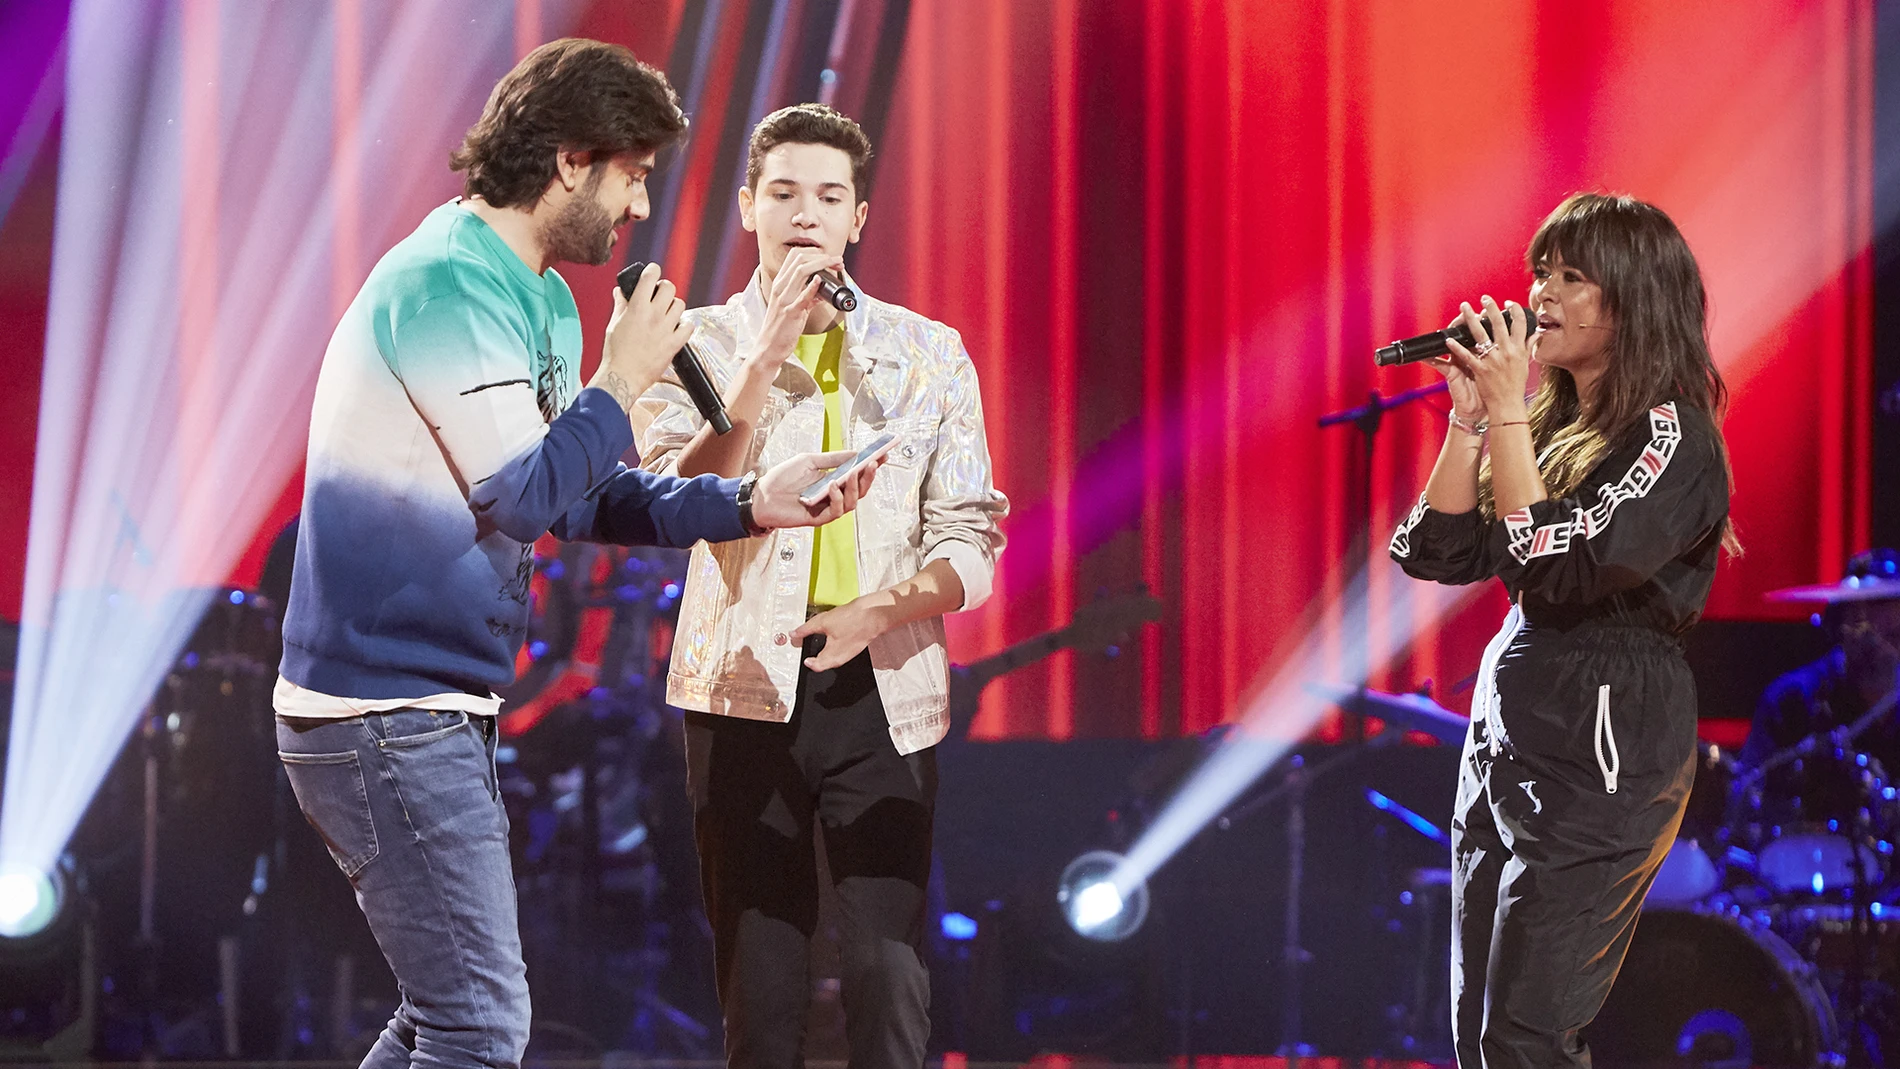 Melendi, Vanesa Martín y Javier Crespo, un momento inédito cantando 'Caída libre' en la Semifinal de 'La Voz Kids'